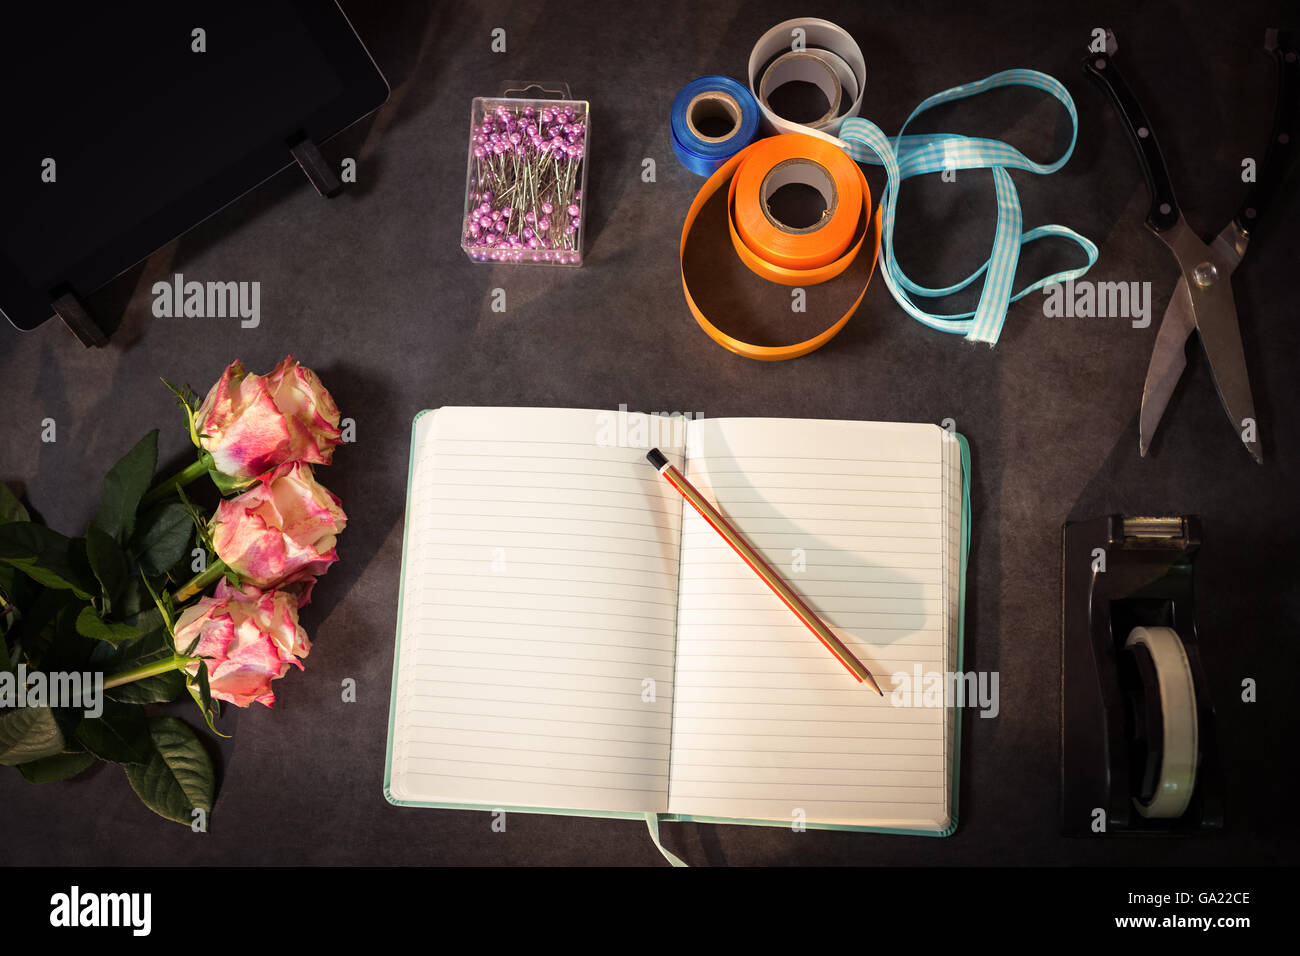 Aprire il diario e il fioraio accessori sul tavolo Foto Stock